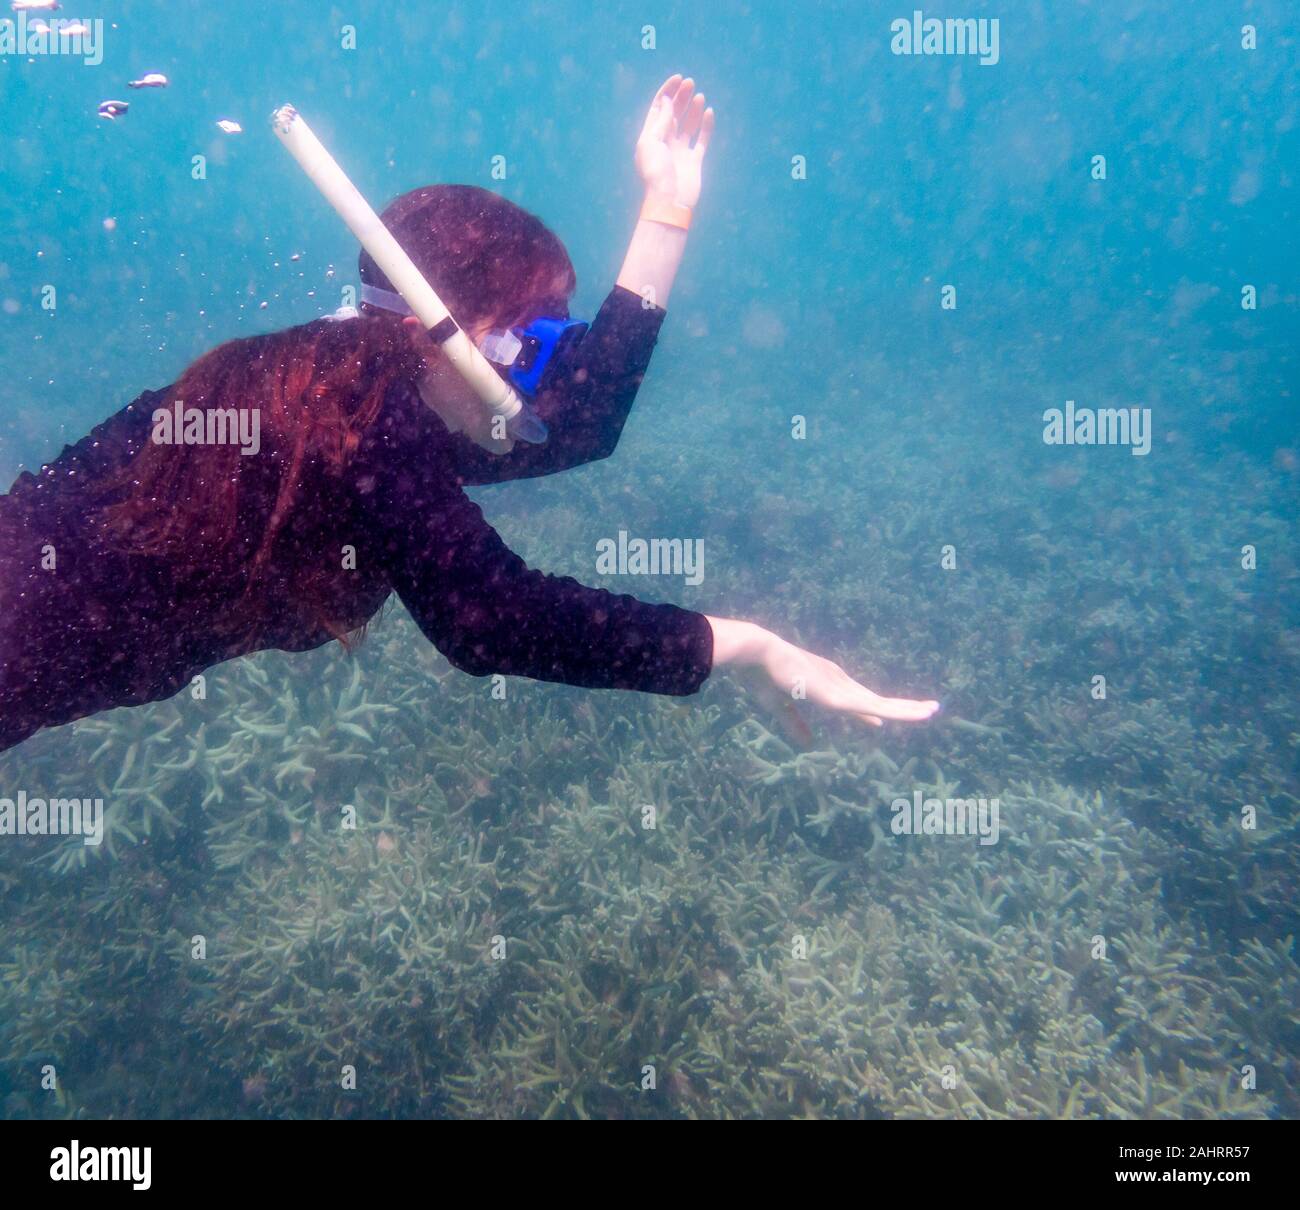 Intenzionalmente SFOCATE PER PROTEGGERE IDENTITY - una femmina non identificato snorkeler nuota in vista nella torbida acqua torbida su una bassa scogliera di corallo a bassa marea Foto Stock